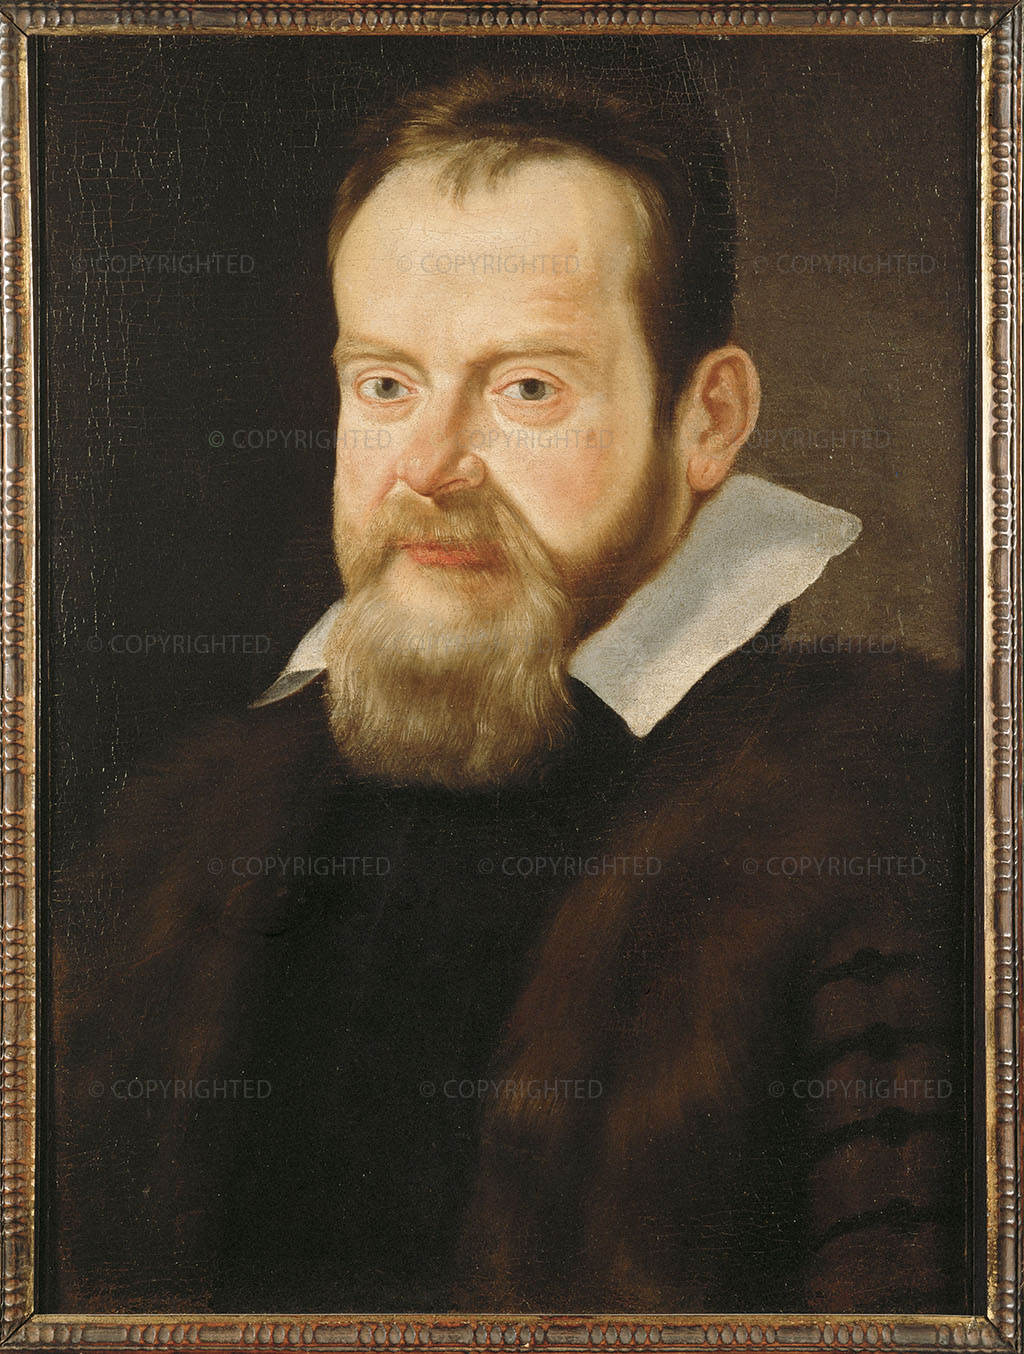 1612, Oil on canvas, cm 57 x 40, Vienna, Kunsthistorisches Museum, Inv. No. GG 7976